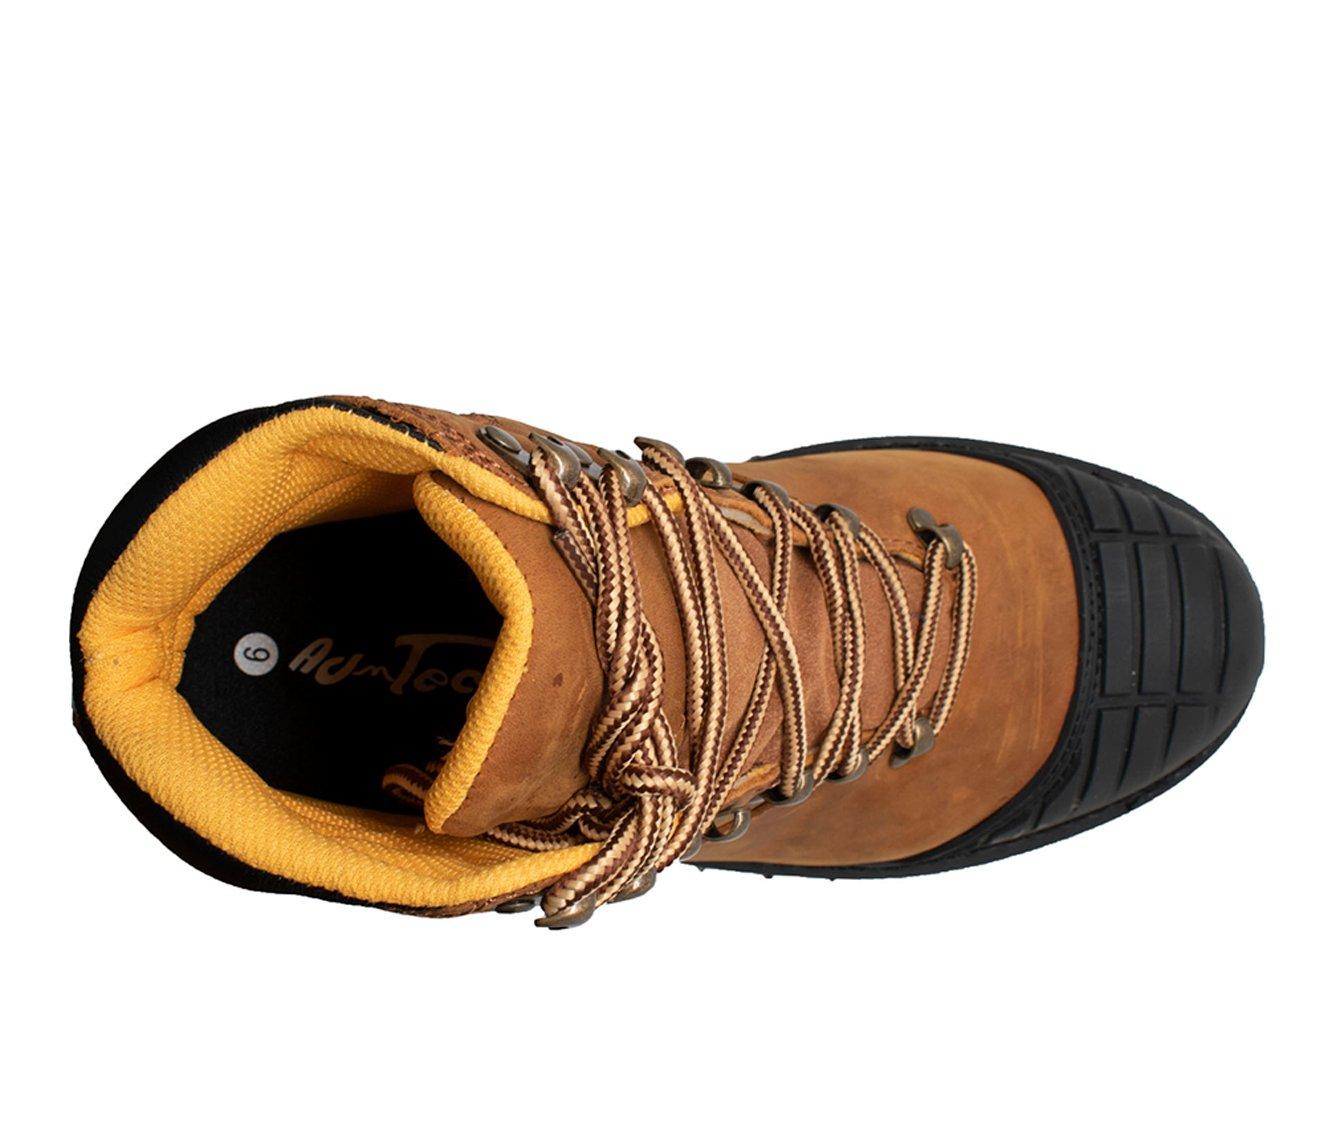 Men's AdTec 7" Steel Toe Work Boots